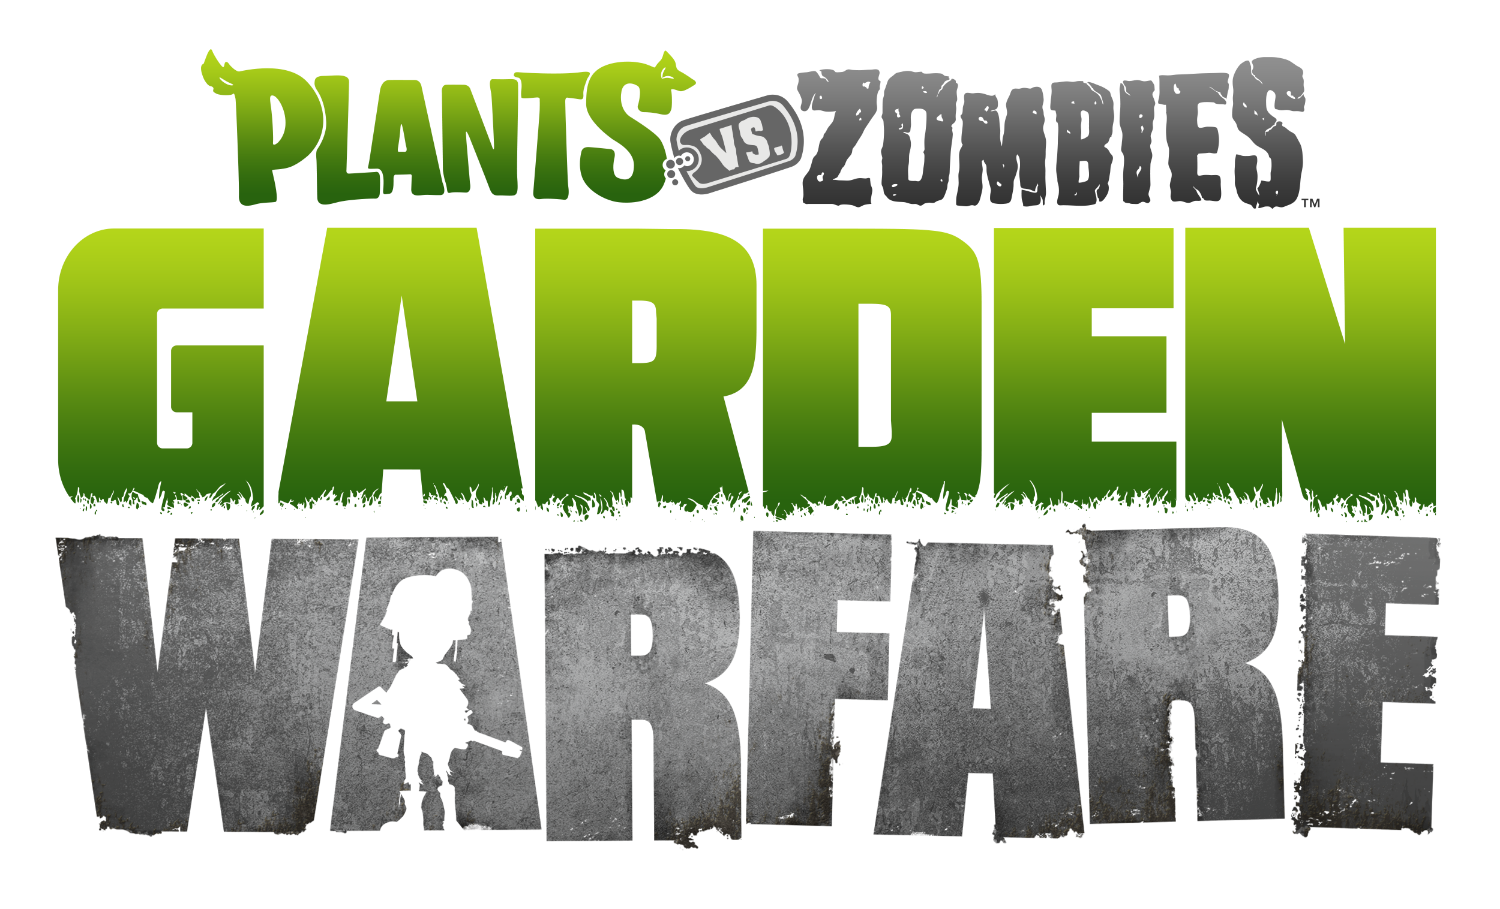 Plants vs. Zombies: Garden Warfare - Wikipedia